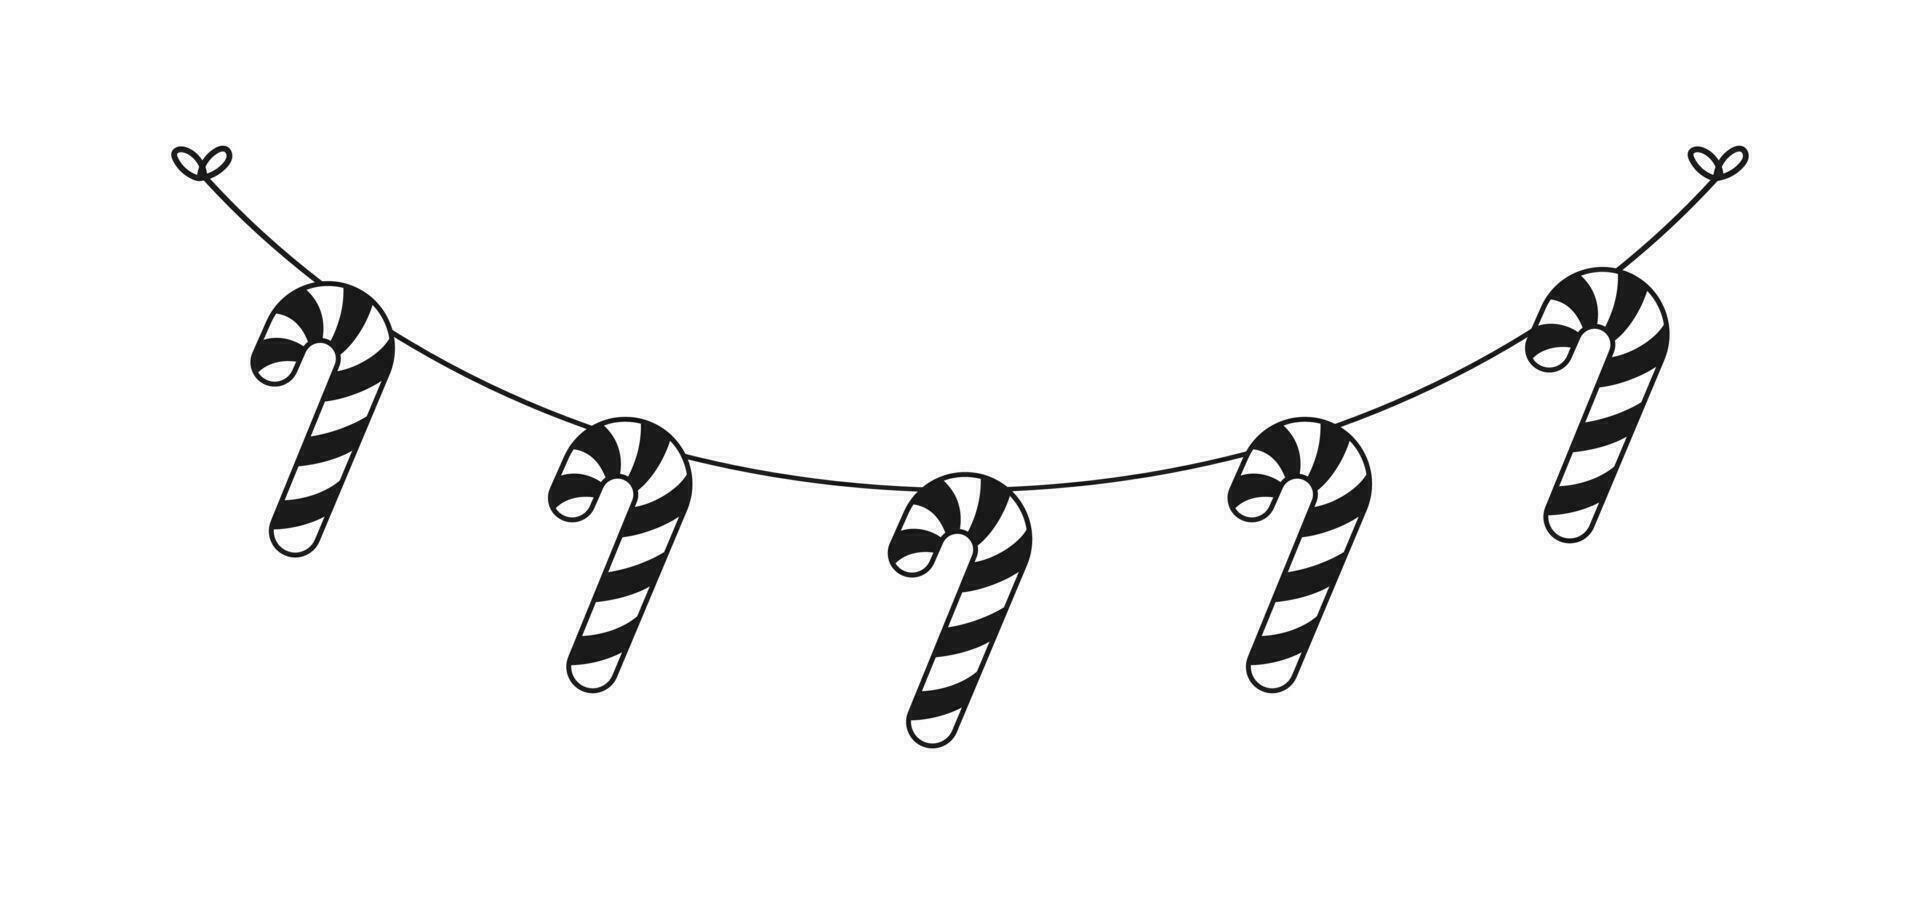 caramelo caña guirnalda silueta vector ilustración, Navidad gráficos festivo invierno fiesta temporada verderón